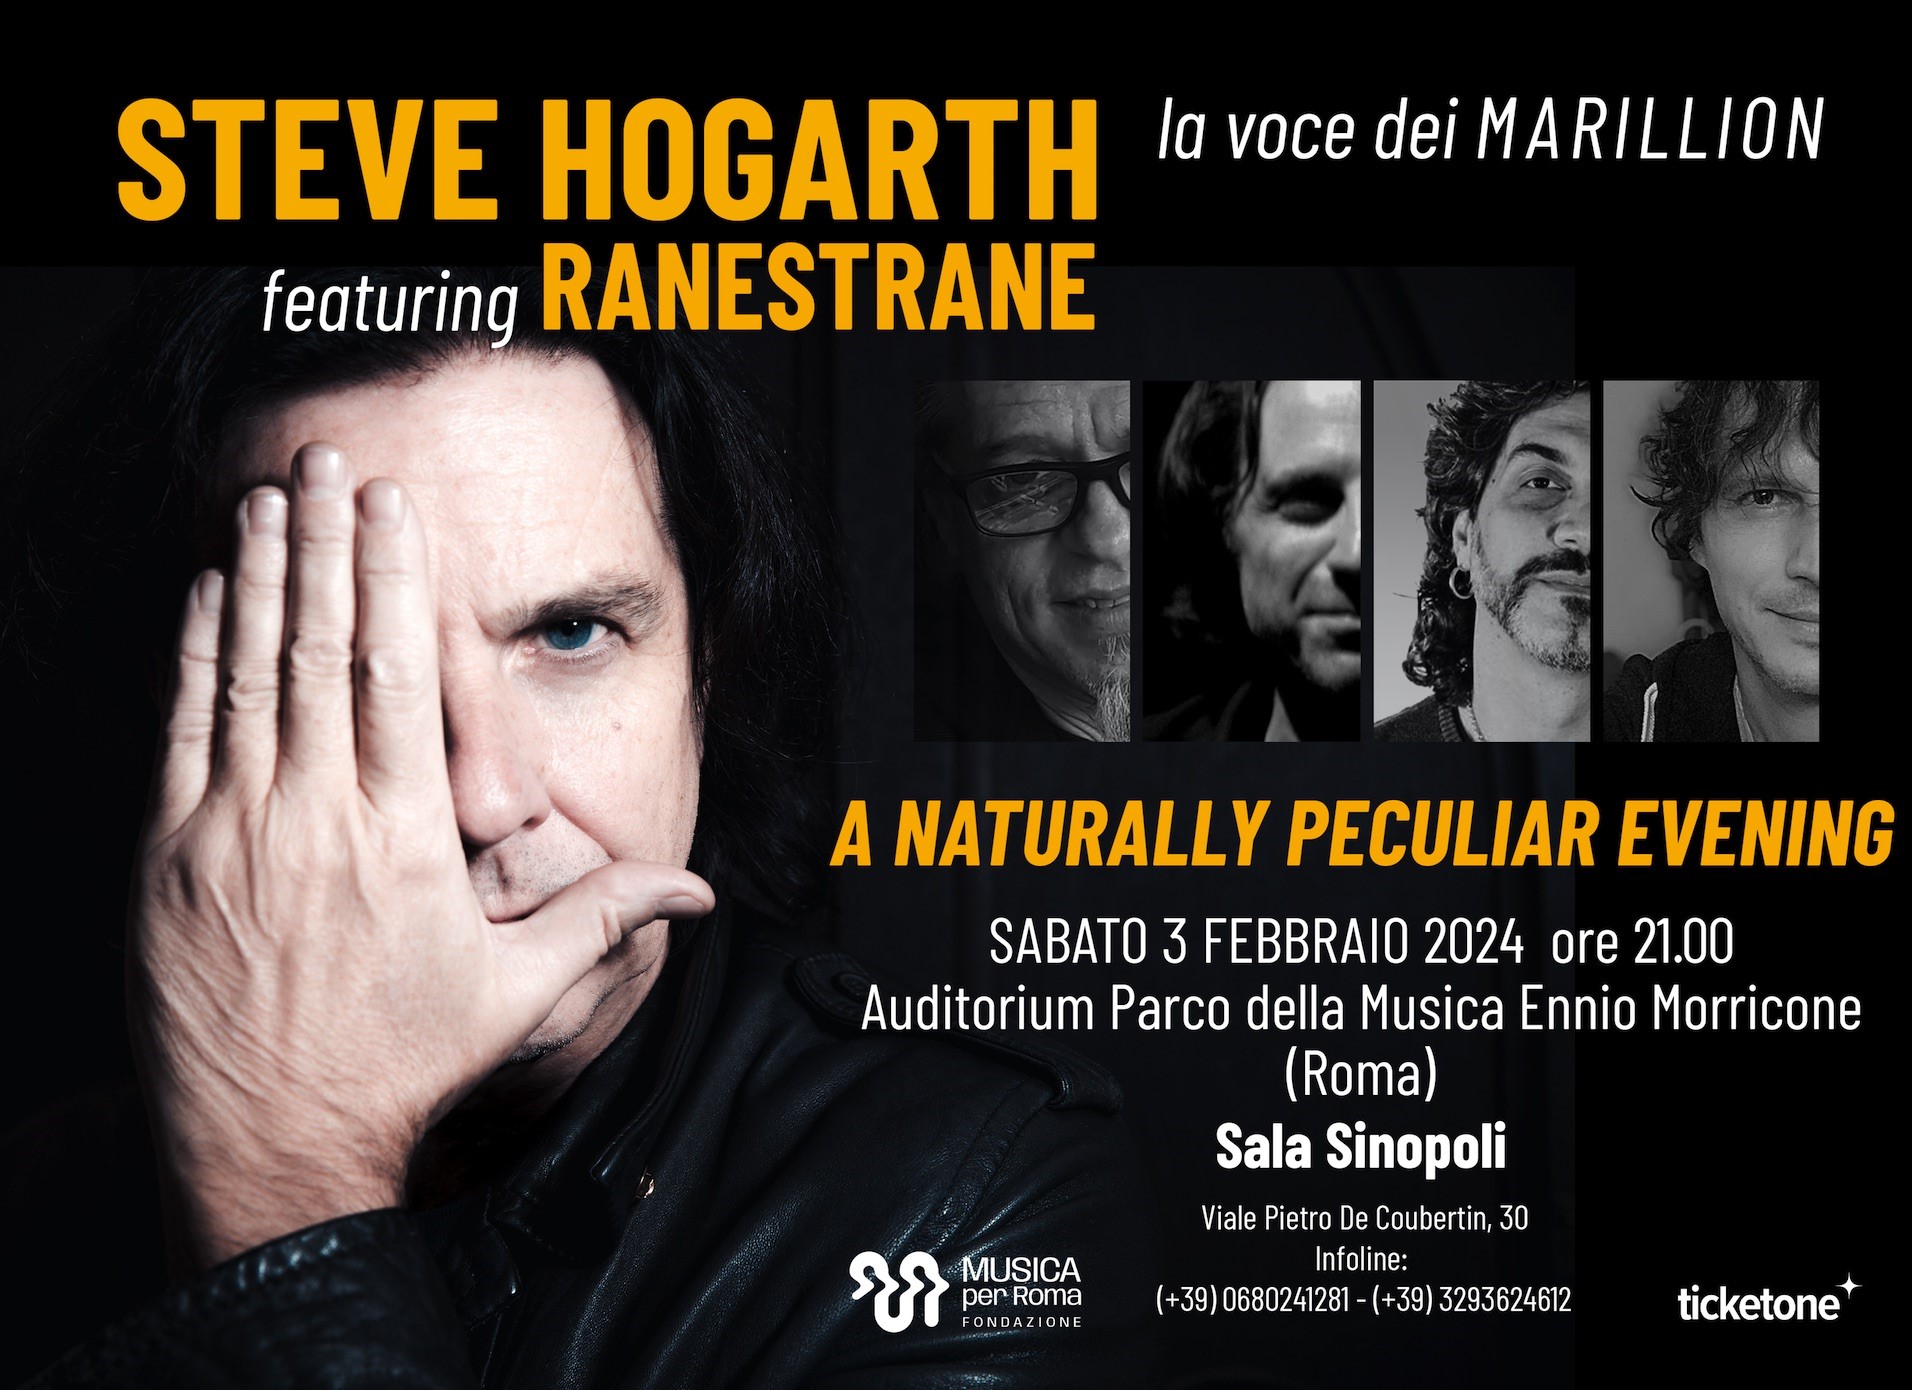 STEVE HOGARTH – data unica in Italia, live a Roma il 3 febbraio presso l’Auditorium Parco della Musica